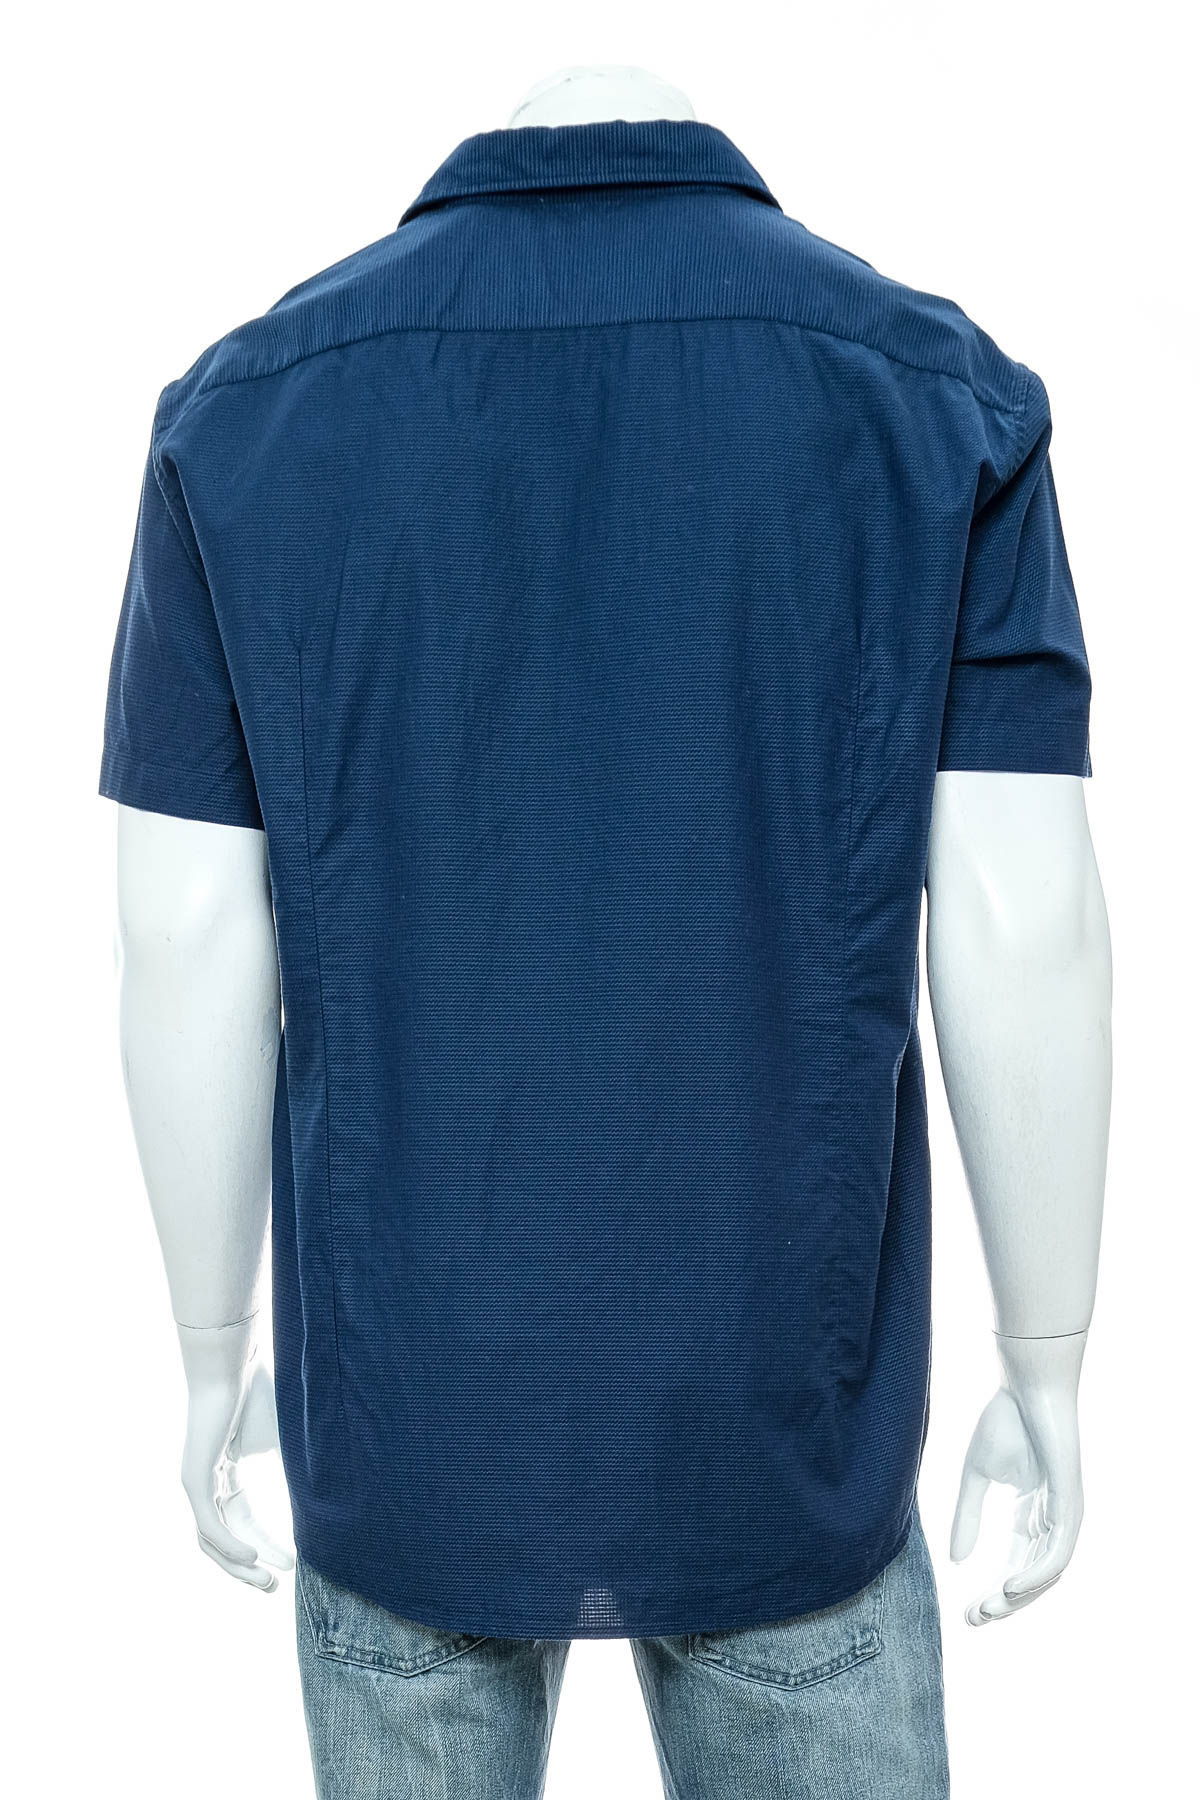 Ανδρικό πουκάμισο - HUGO BOSS - 1